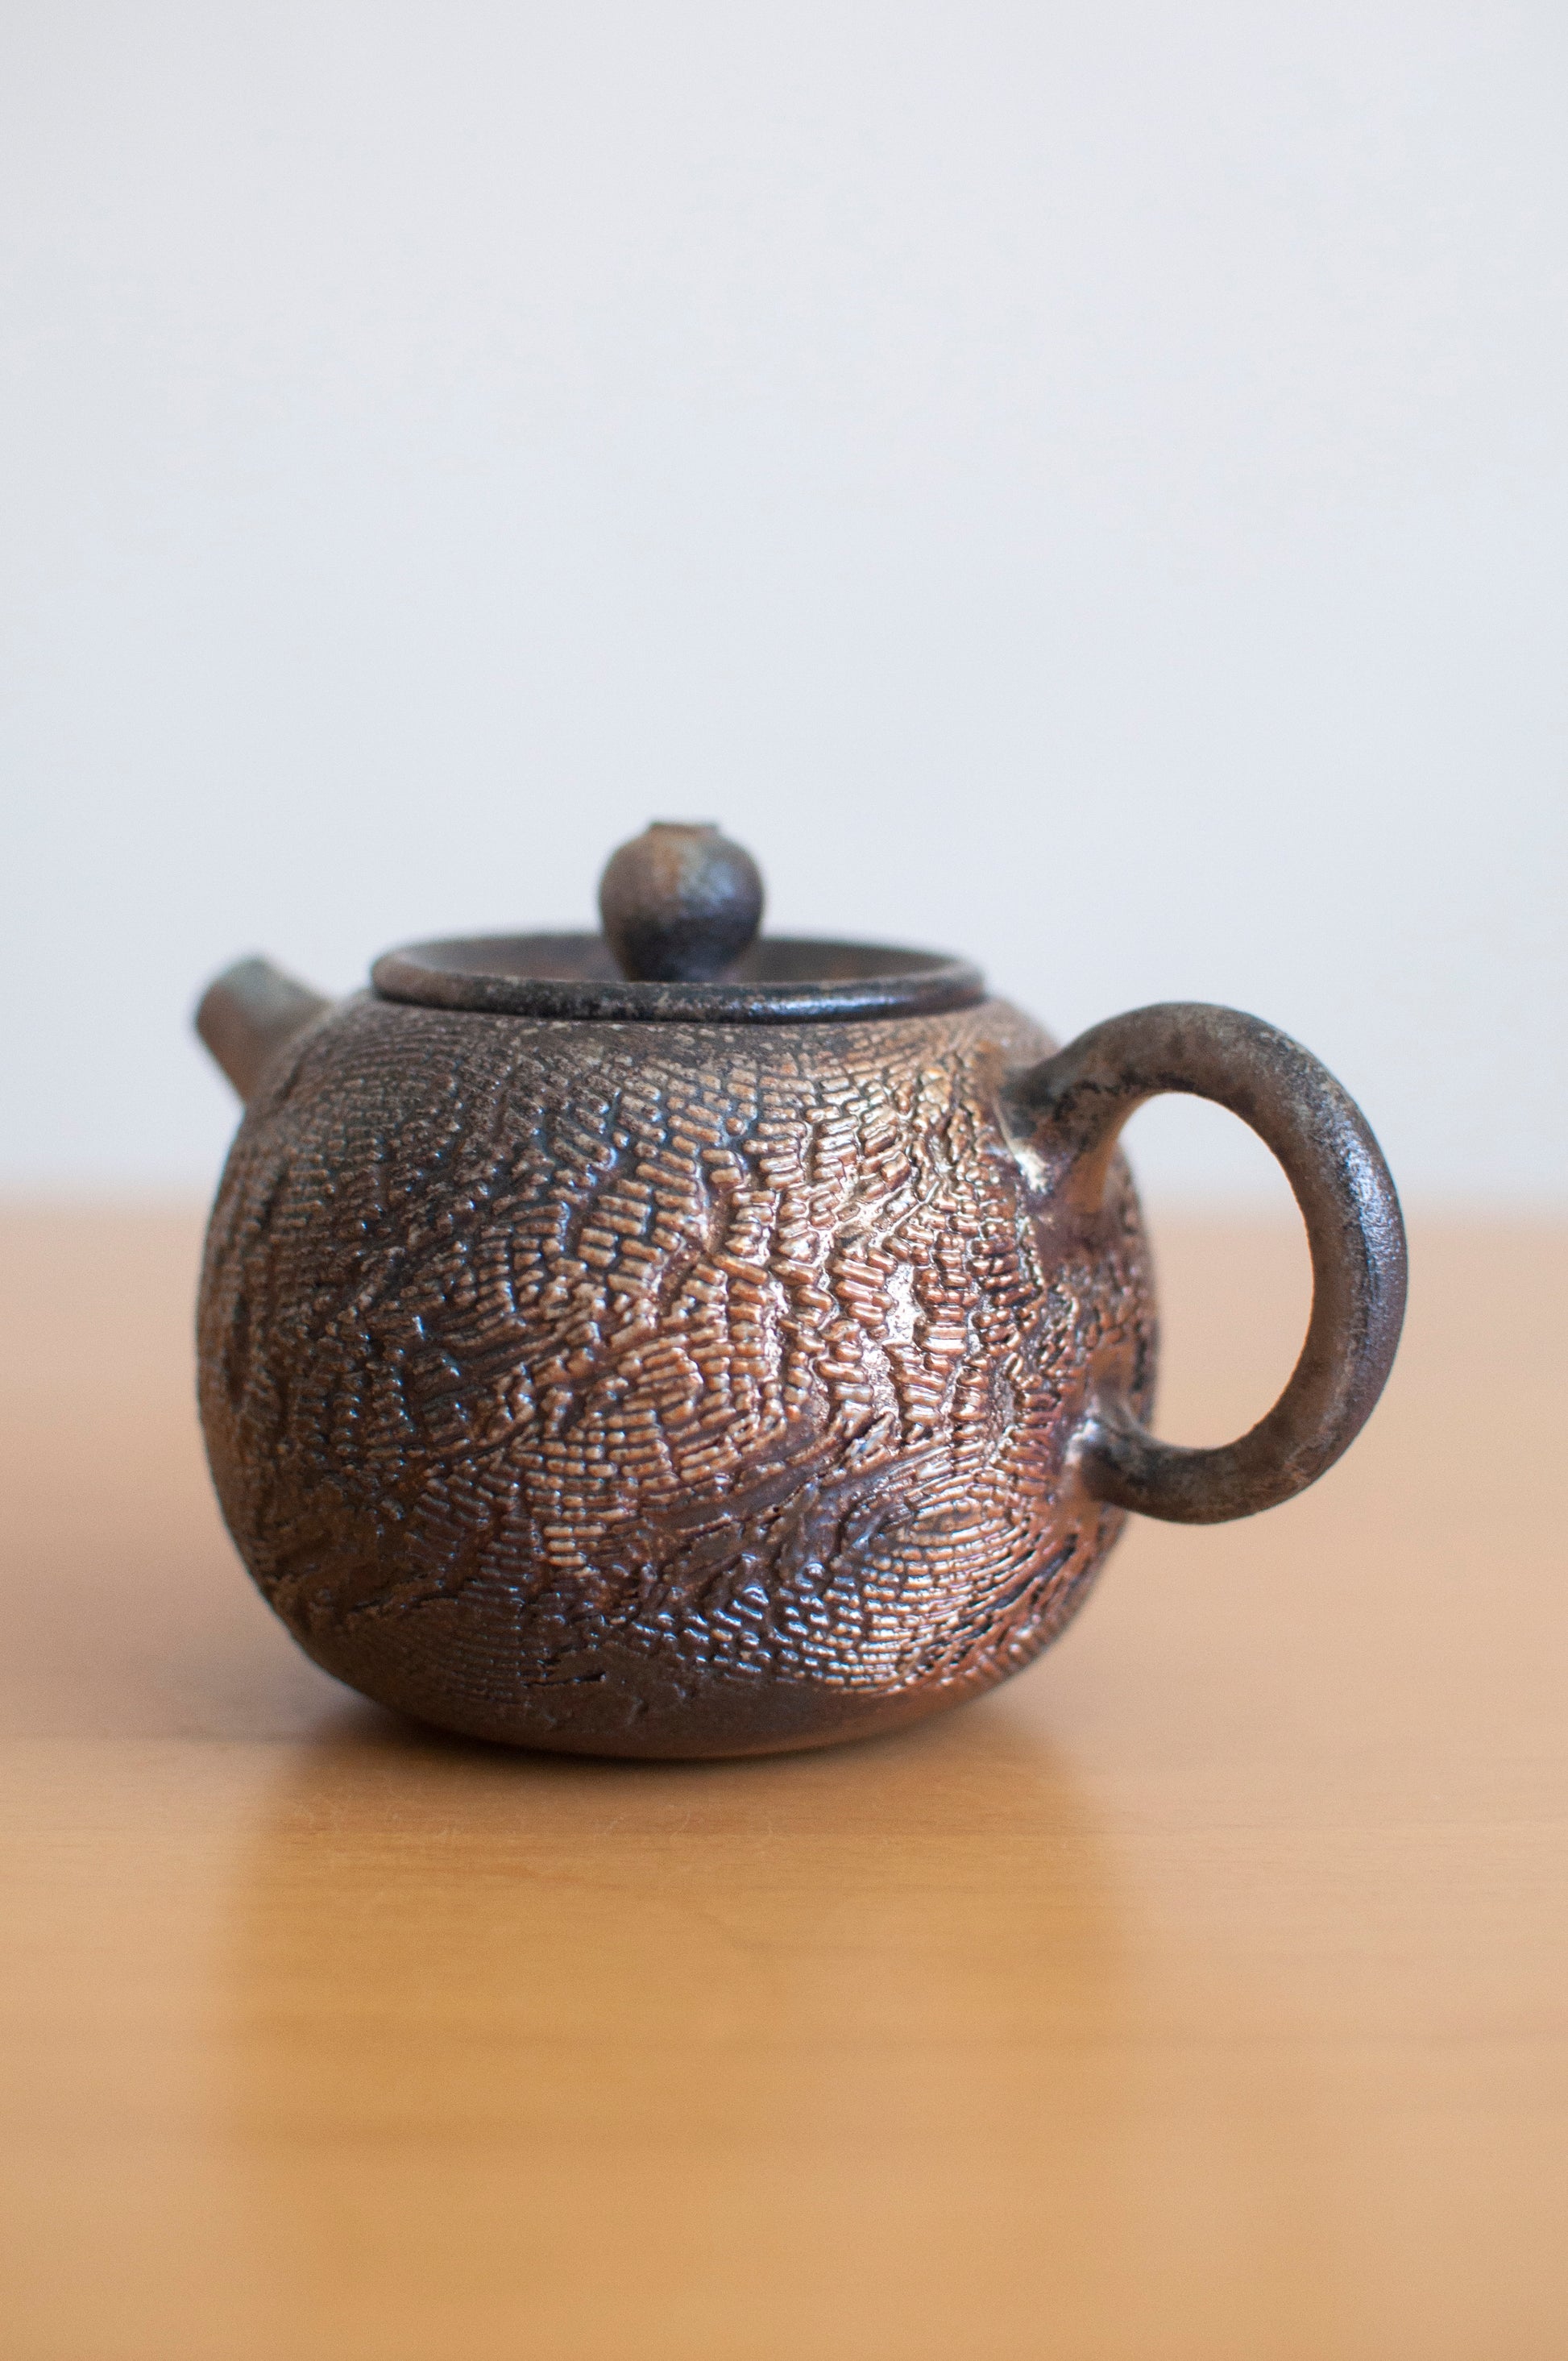 Taiwan wood-fired teapot